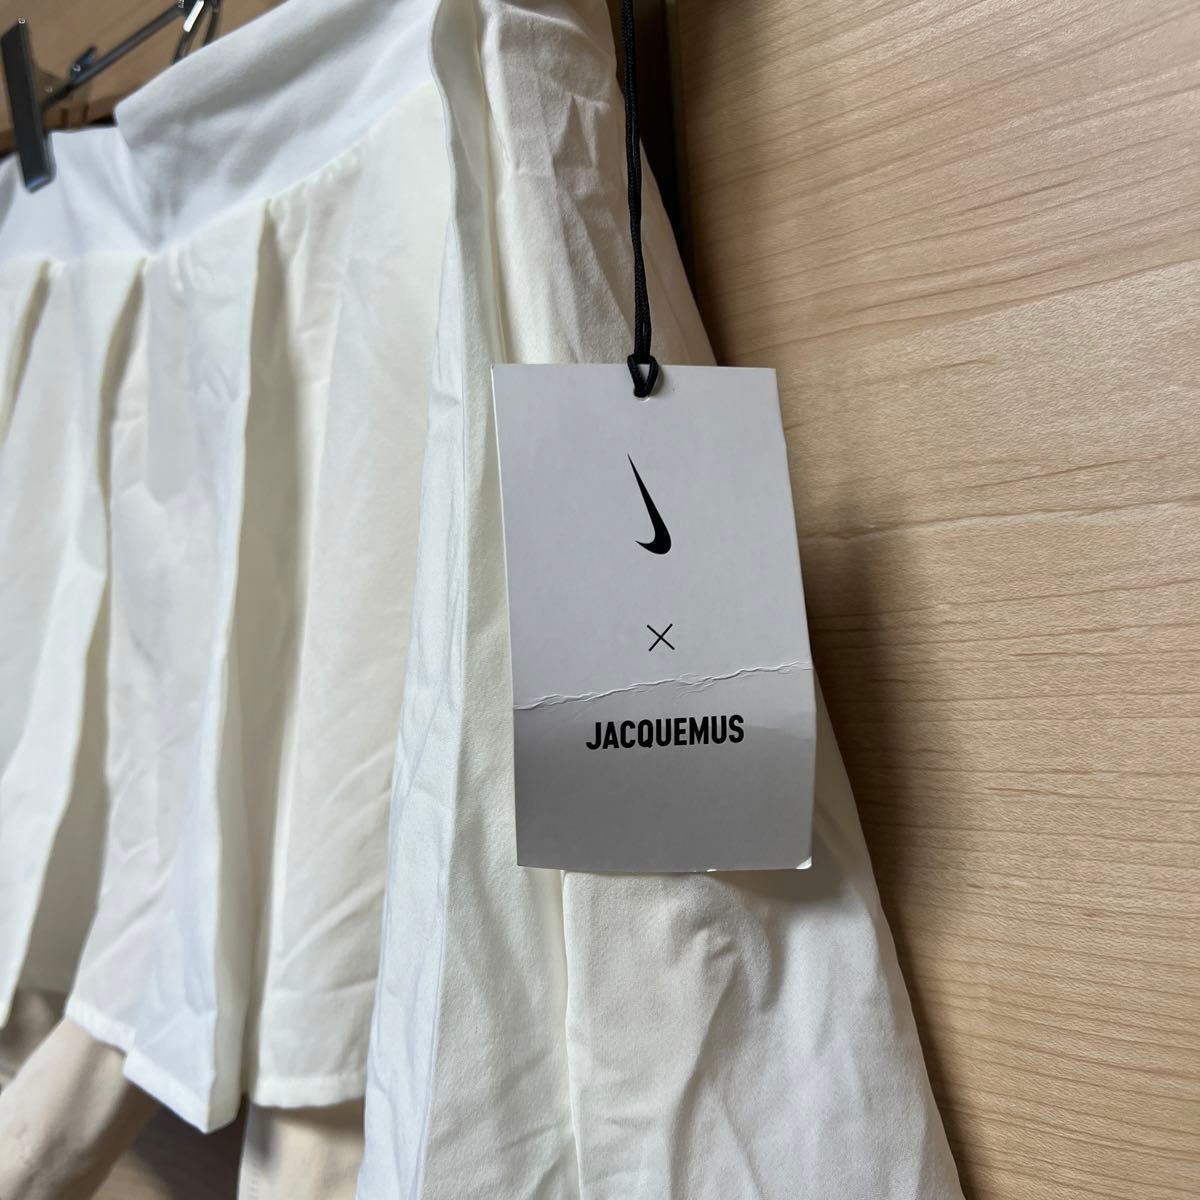 新品タグ付き　NIKE jacquemus スカート　ショートパンツ　ホワイト　